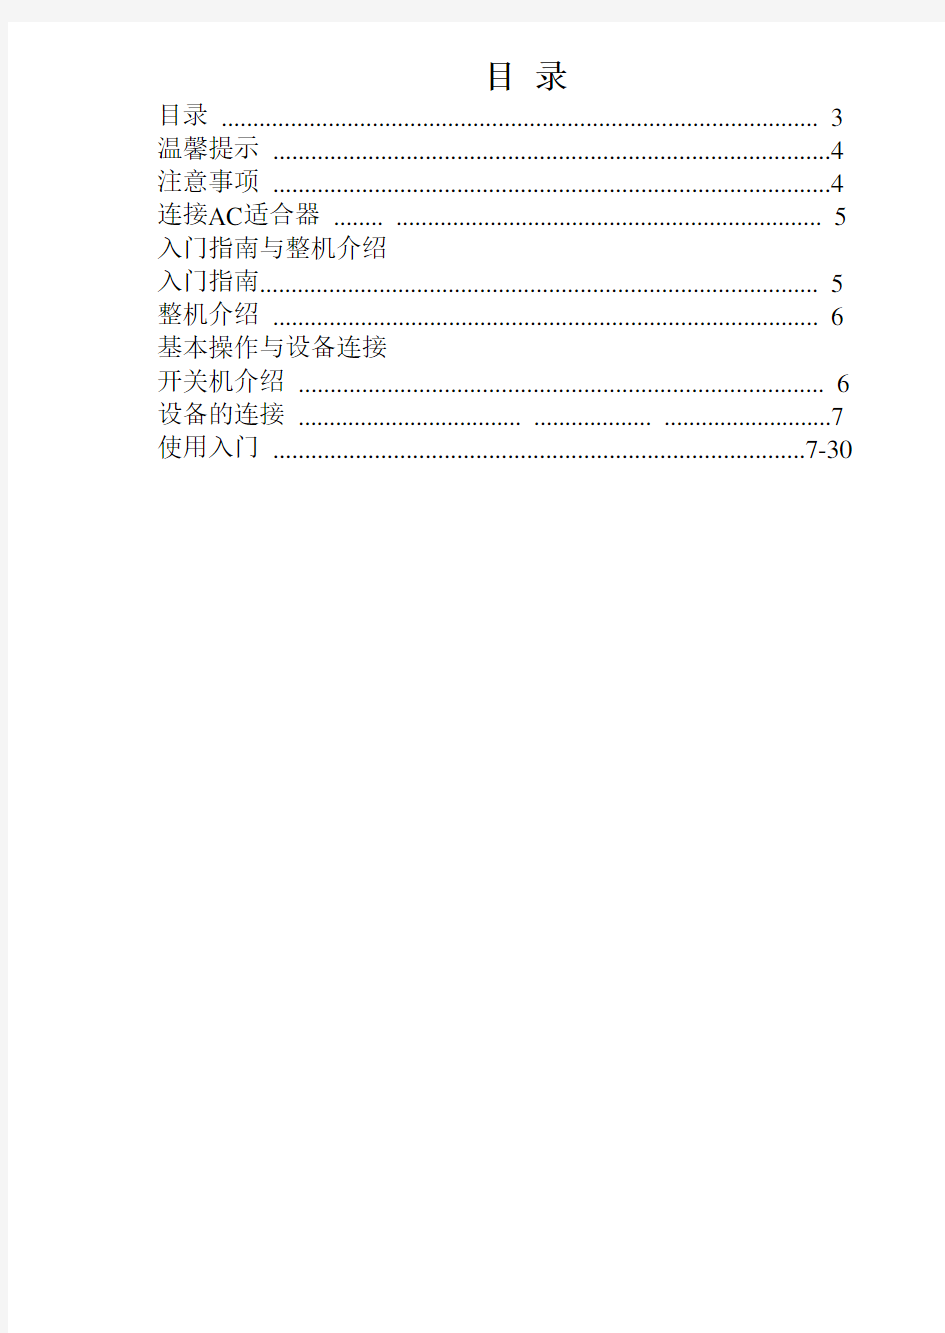 7寸平板电脑最新中文说明书(安卓4.1)通用版。